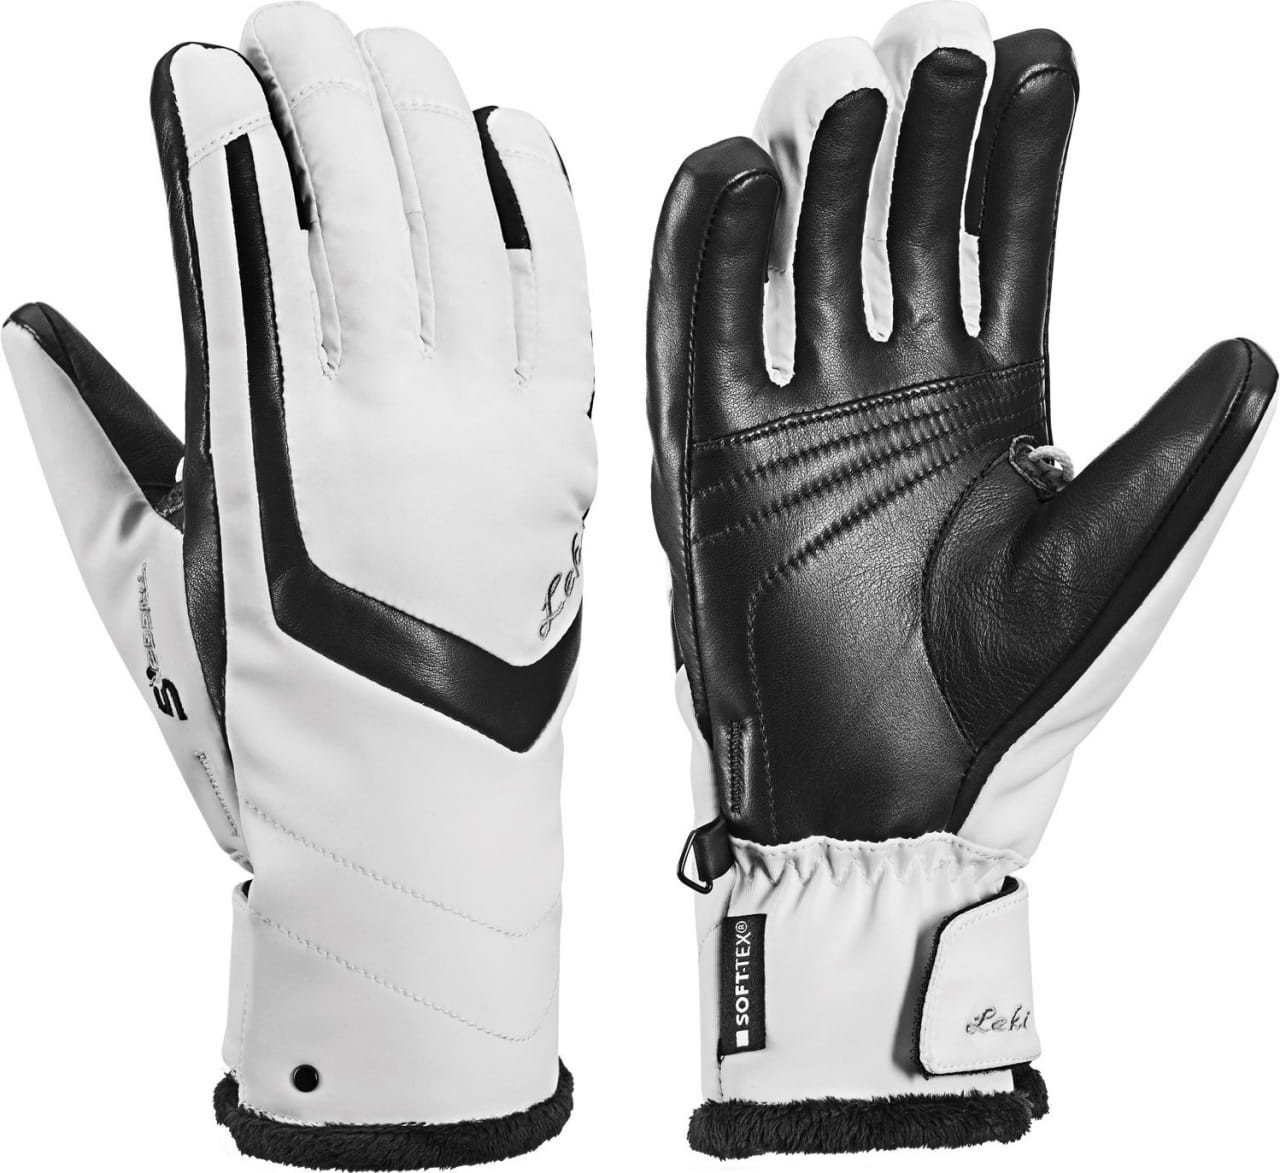 Ski Gloves Leki Stella S White/Black 7 Ski Gloves